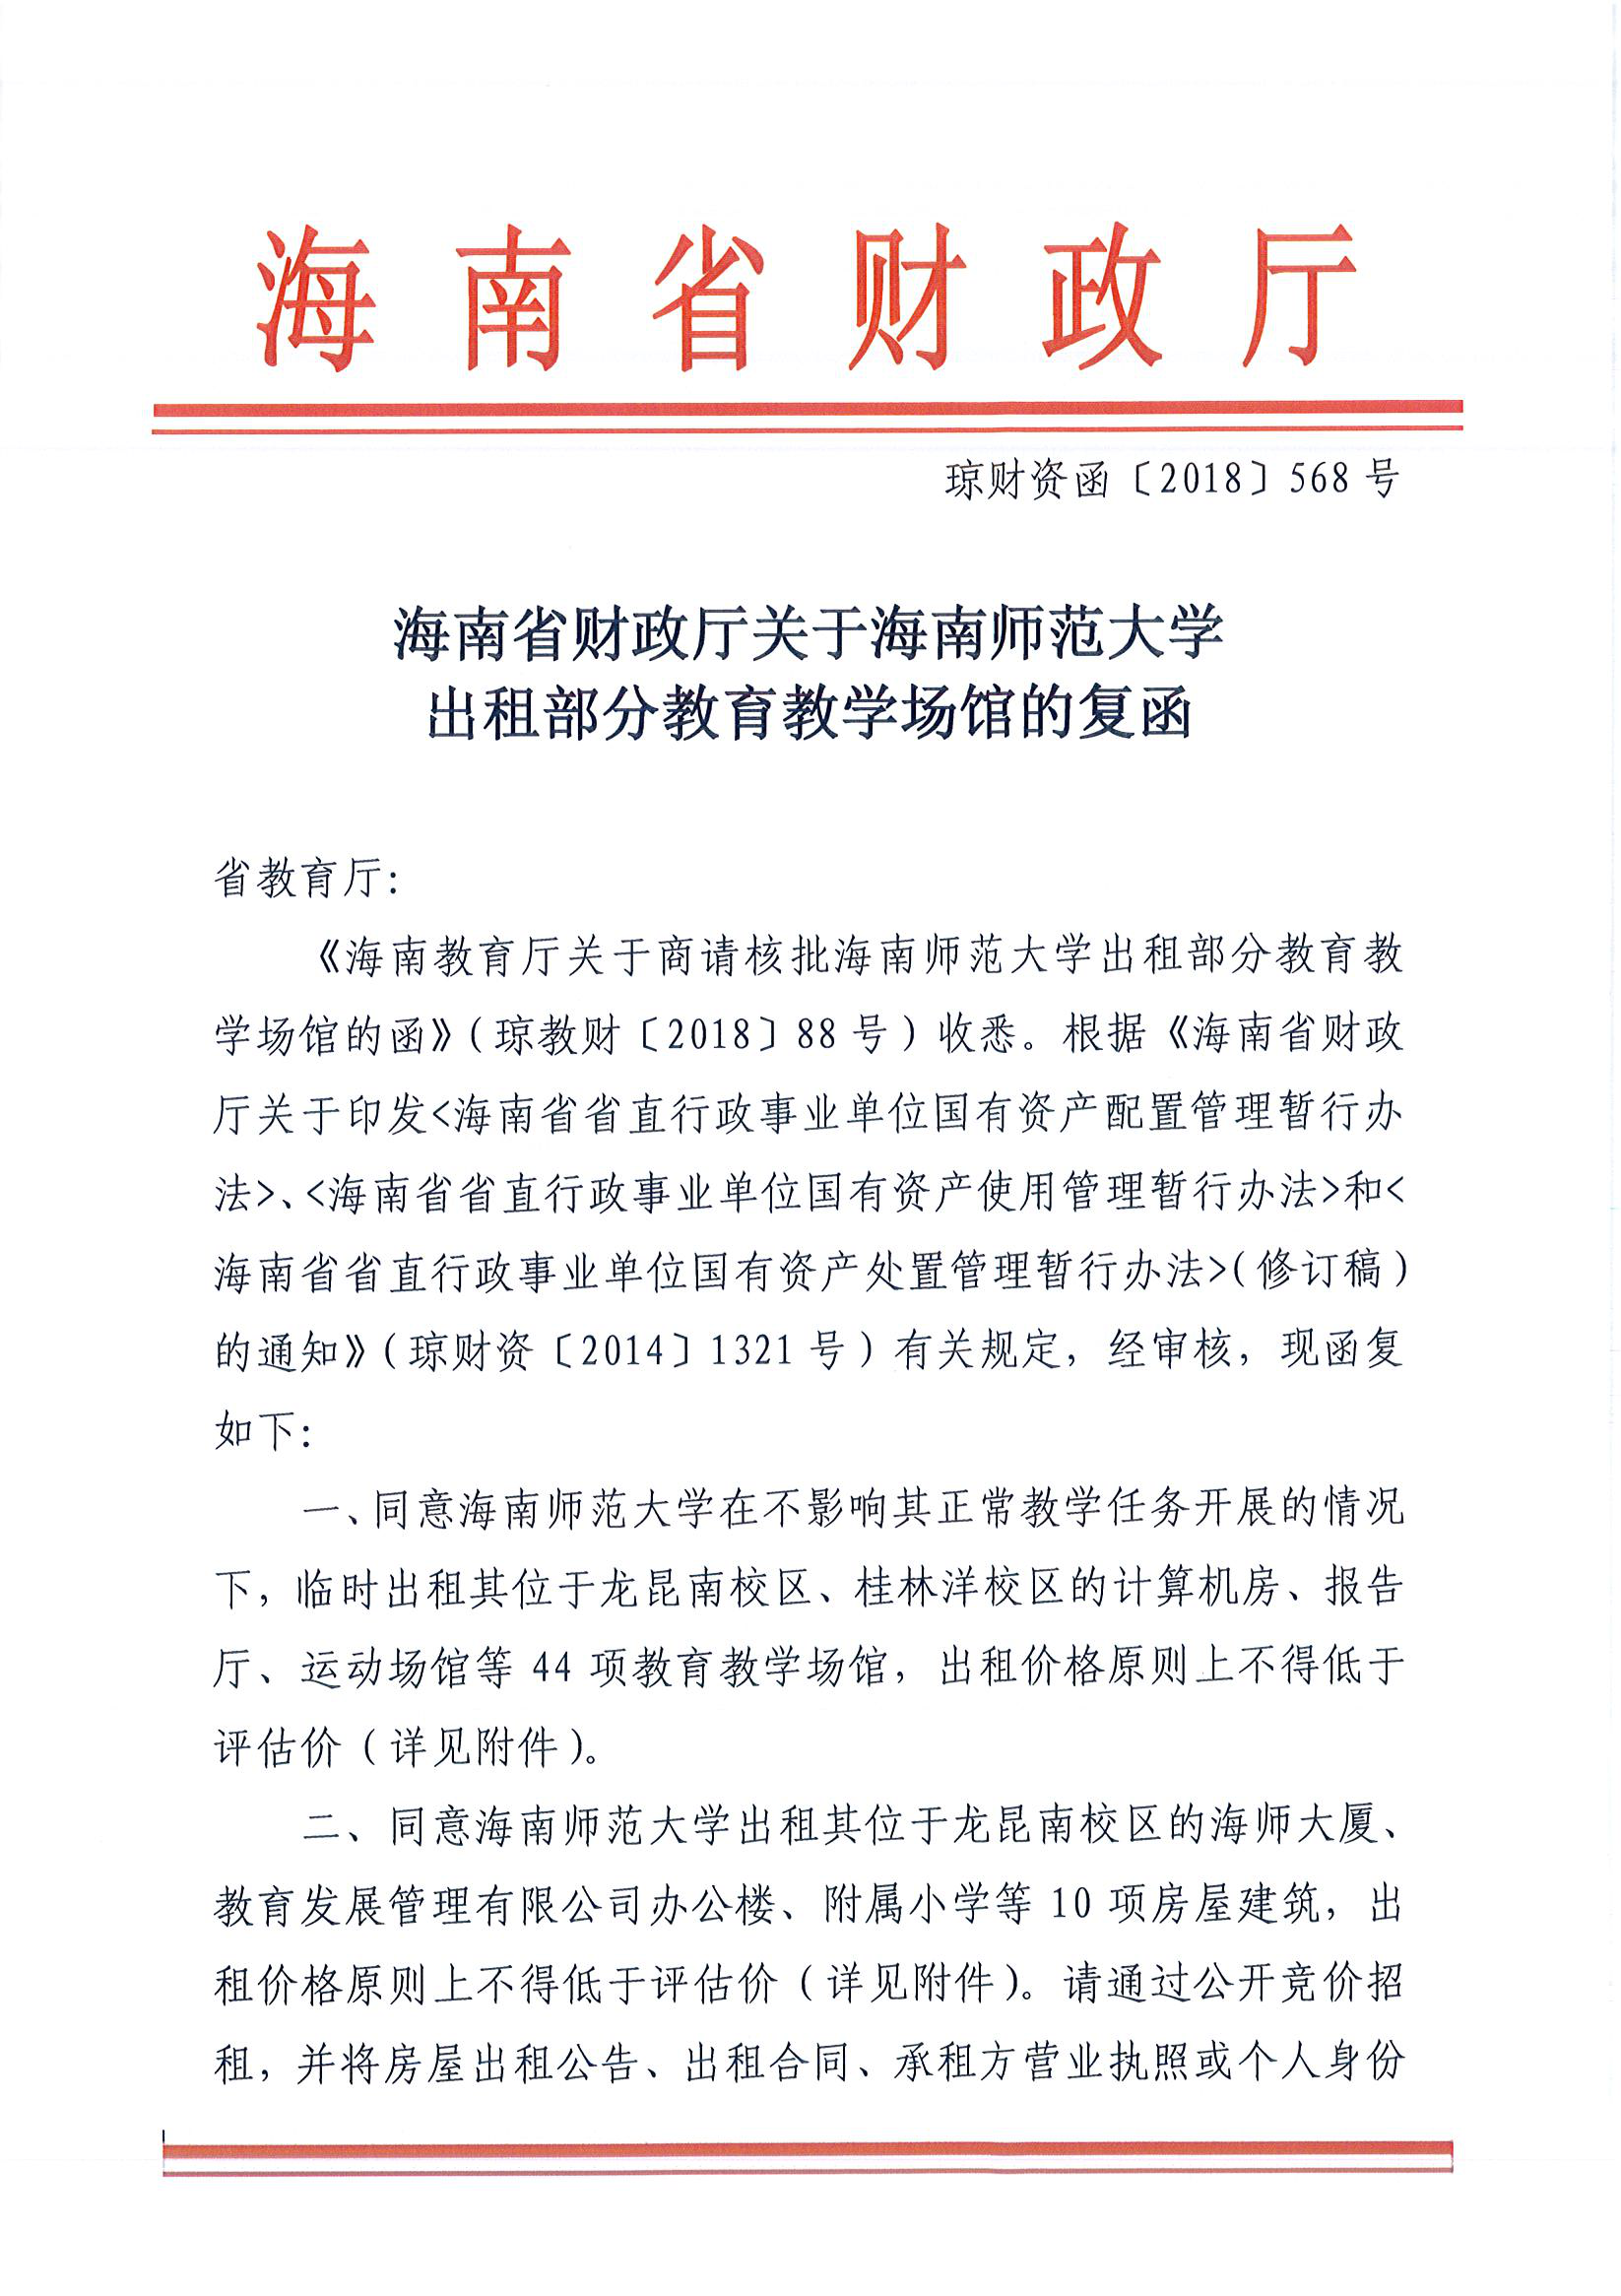 海南省财政厅关于海南师范大学出租部分教育教学场馆的复函